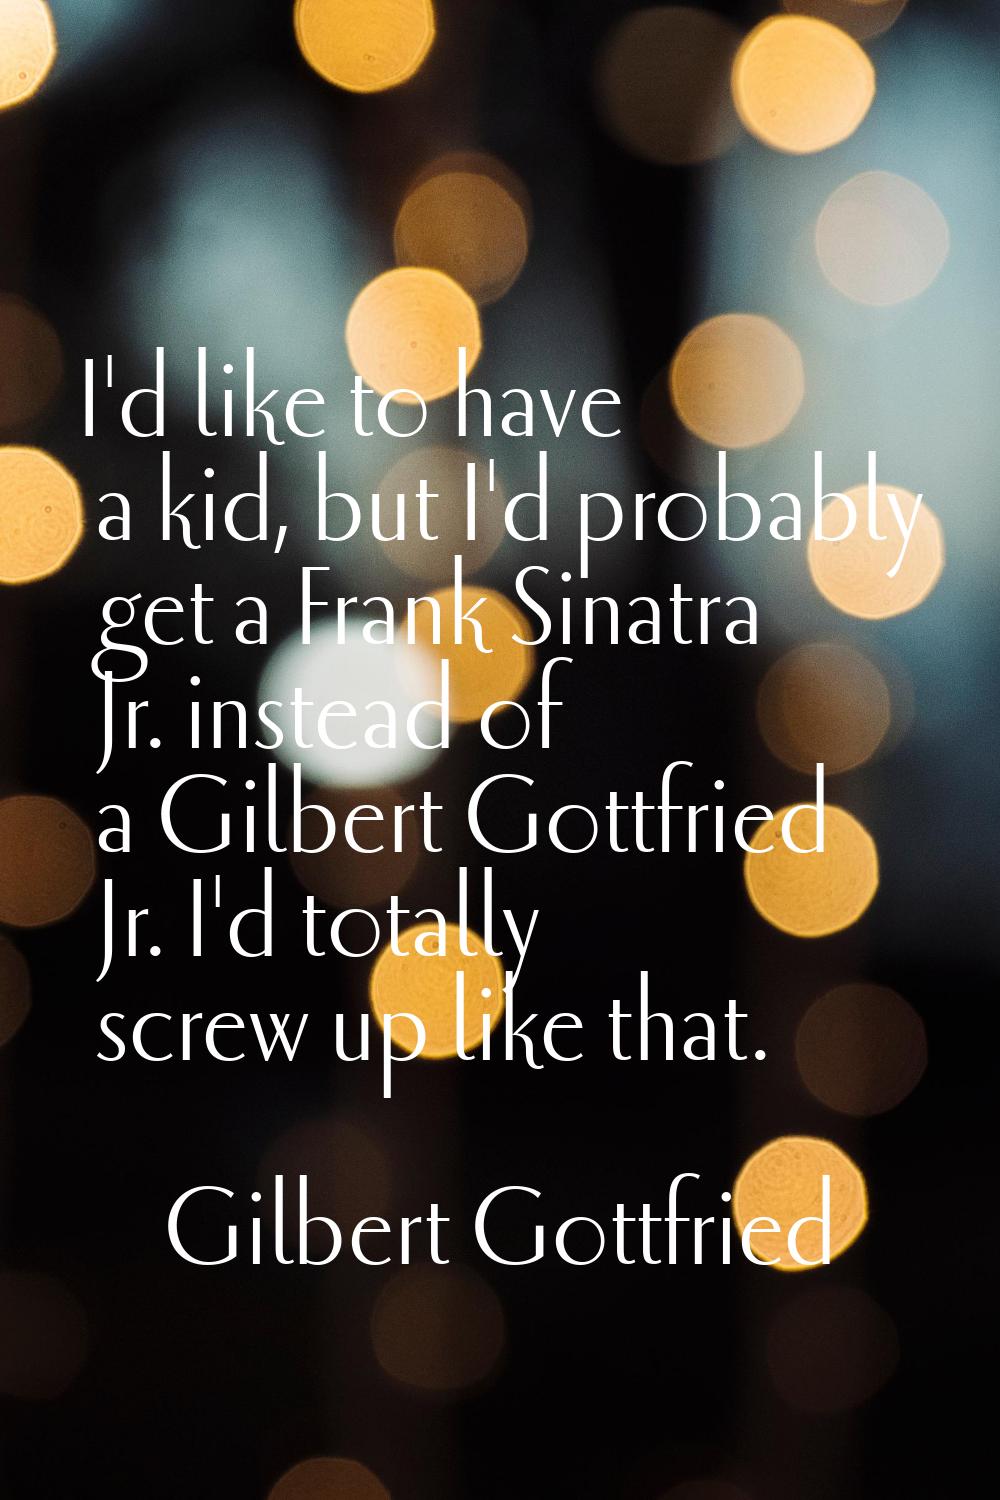 I'd like to have a kid, but I'd probably get a Frank Sinatra Jr. instead of a Gilbert Gottfried Jr.